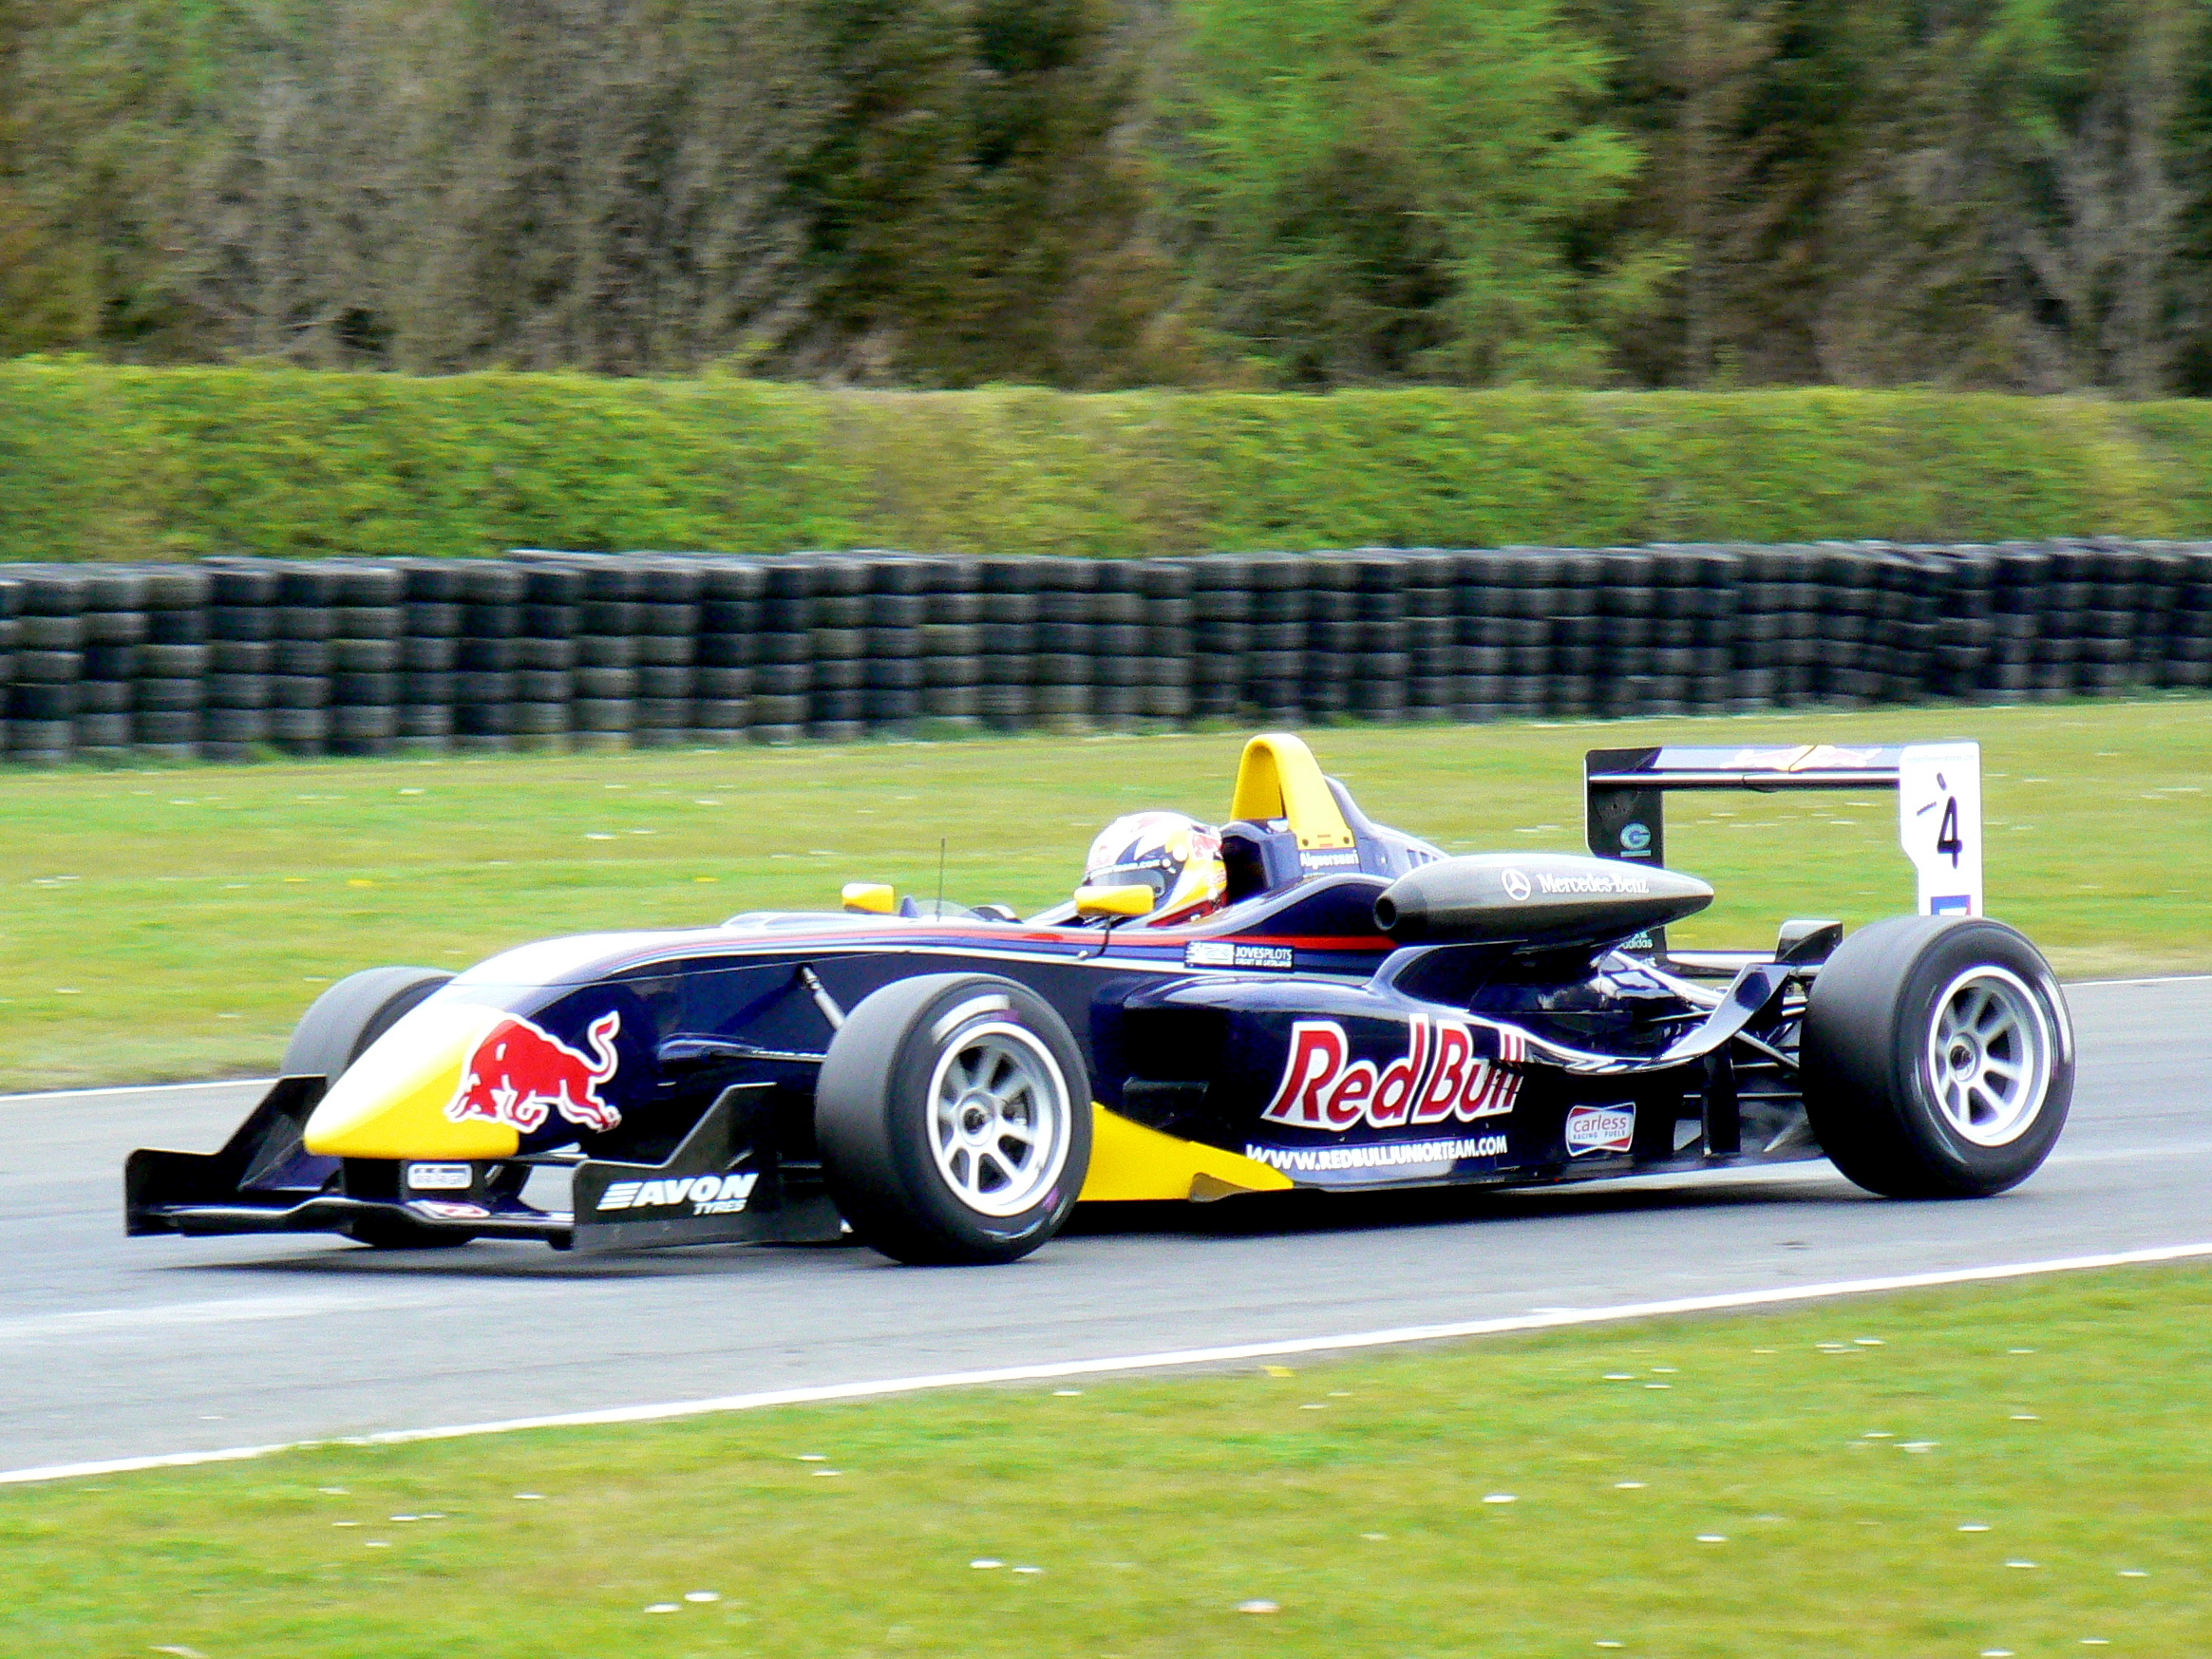 2008 British Formula 3 International - Wikipedia